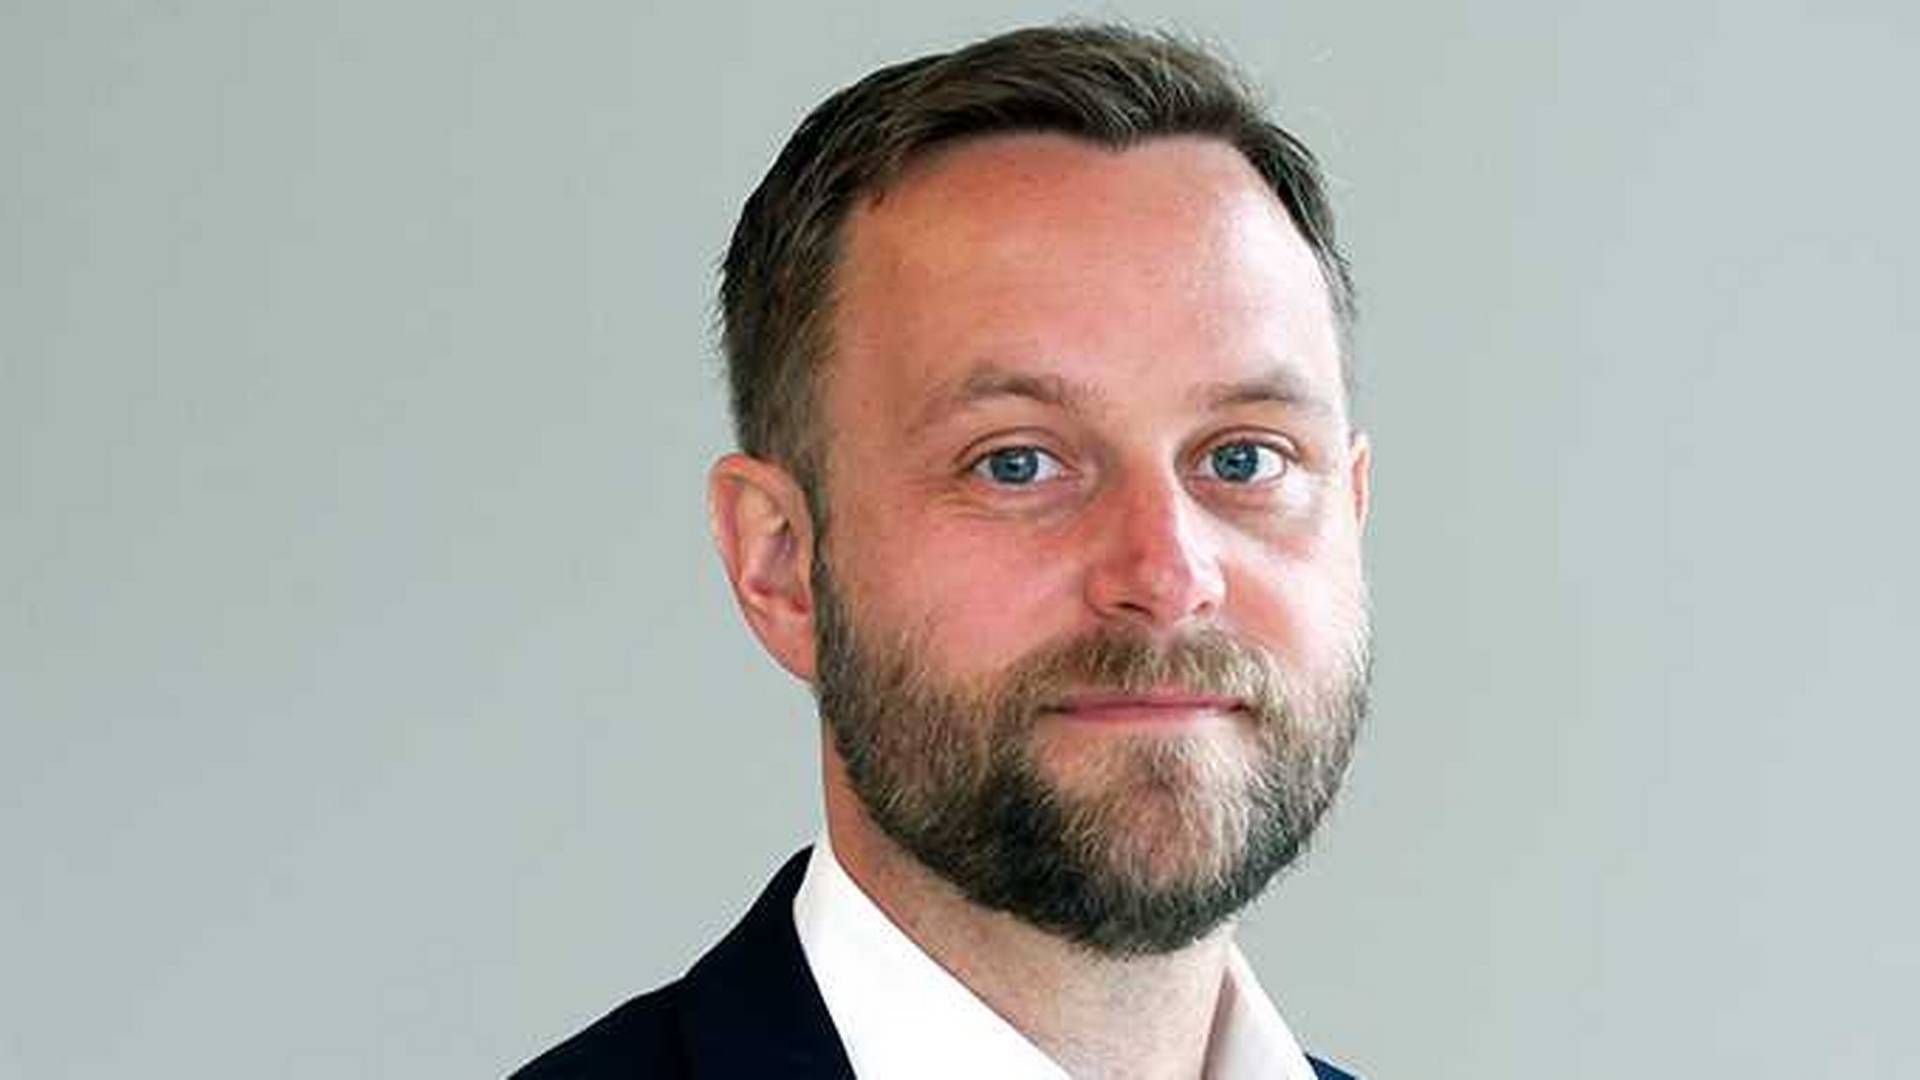 Fredrik Bjelland portfolio manager of Skagen's Kon-Tiki Emerging Markets fund. | Photo: PR/Skagen